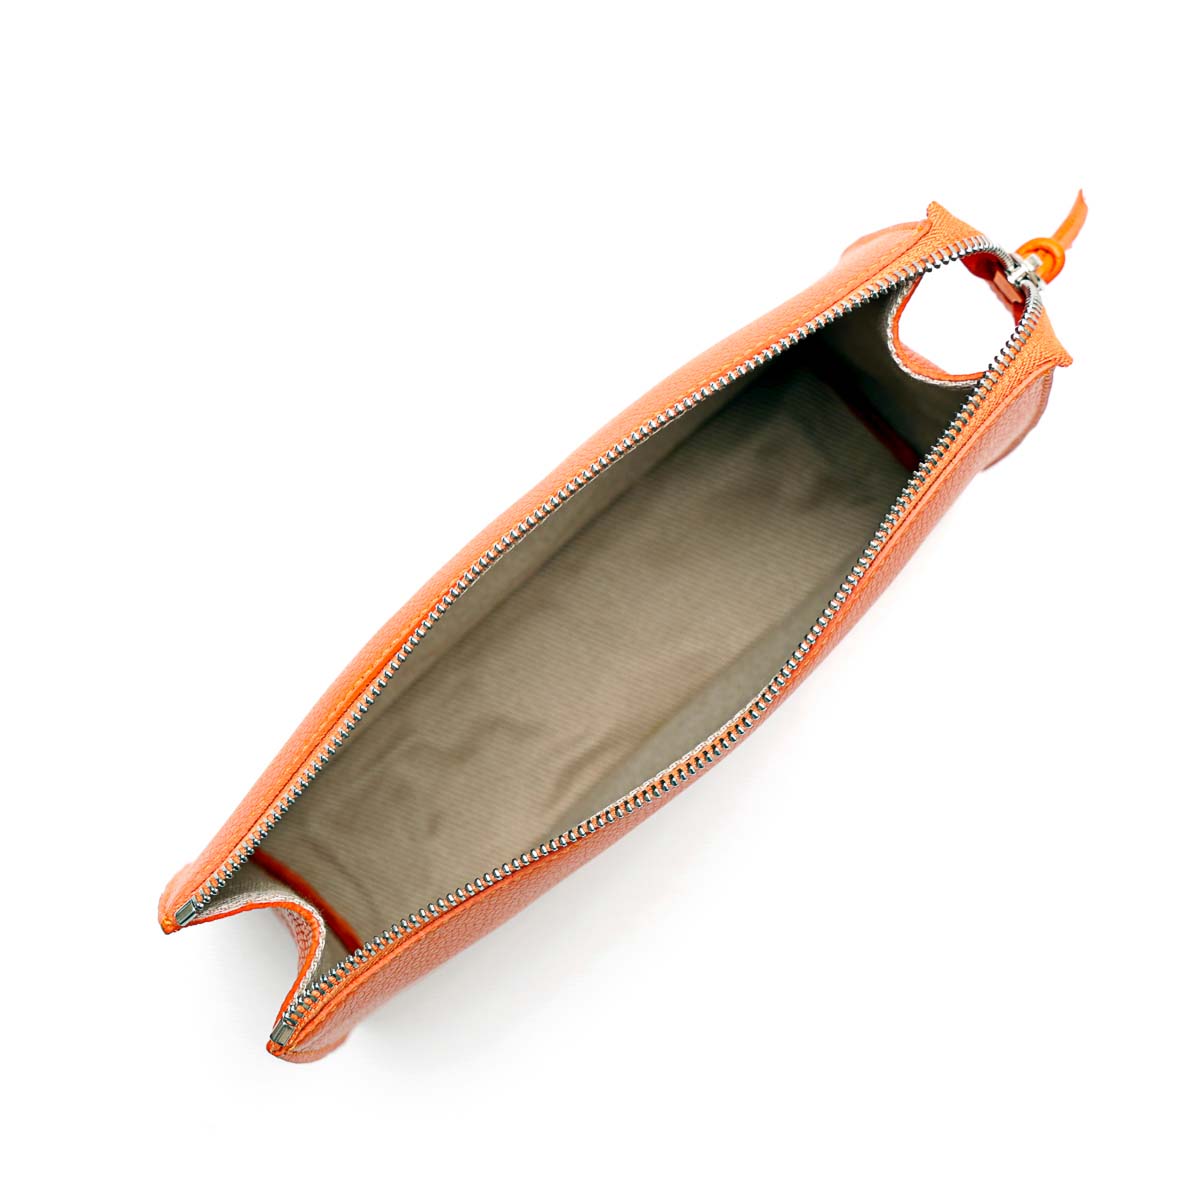 Pocket large in pelle martellata arancio prodotta da Pianigiani bags